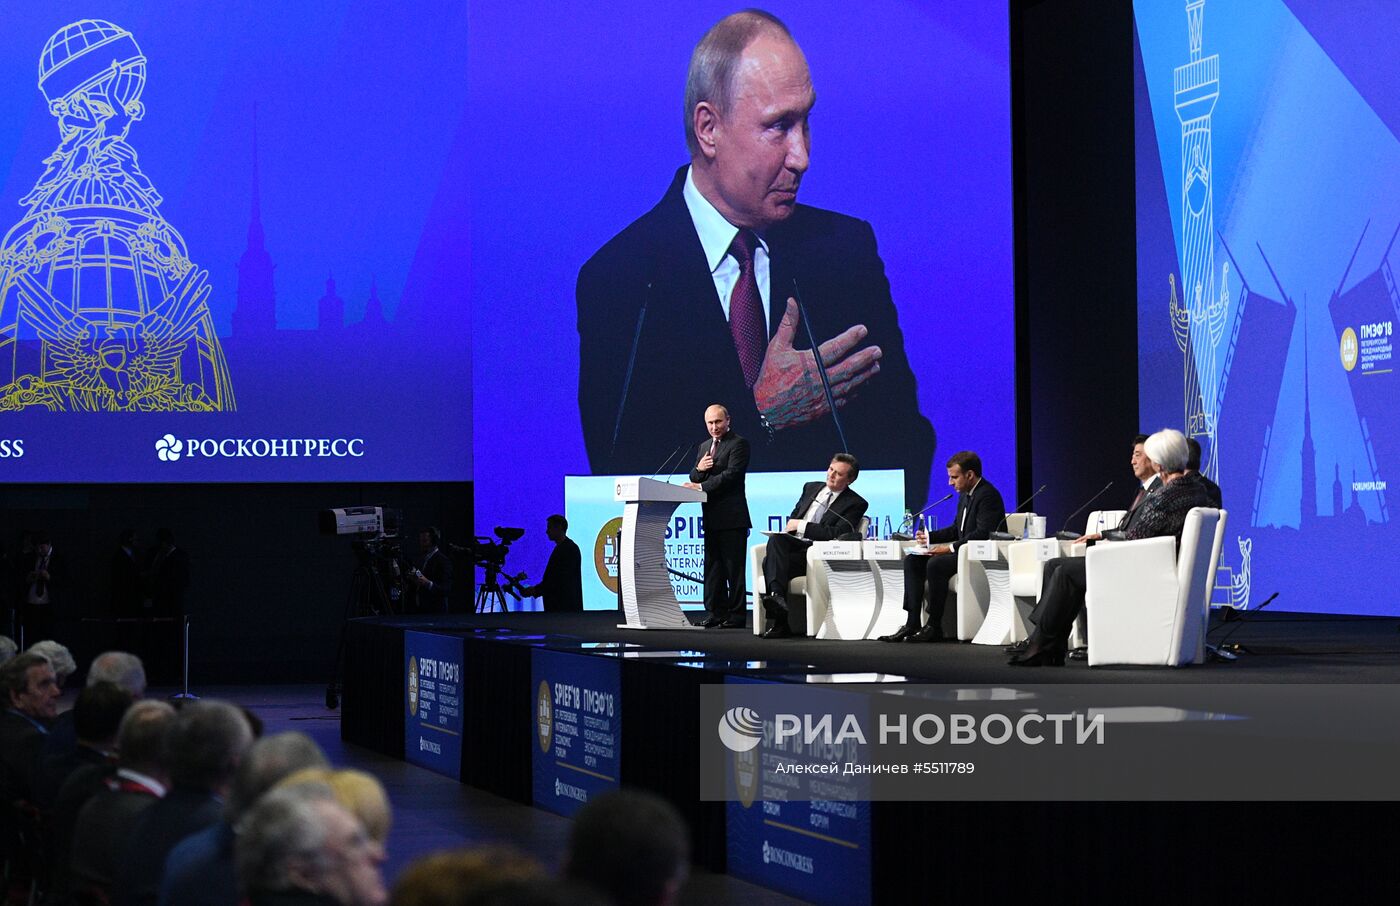 Президент РФ В. Путин принял участие во втором дне работы ПМЭФ - 2018